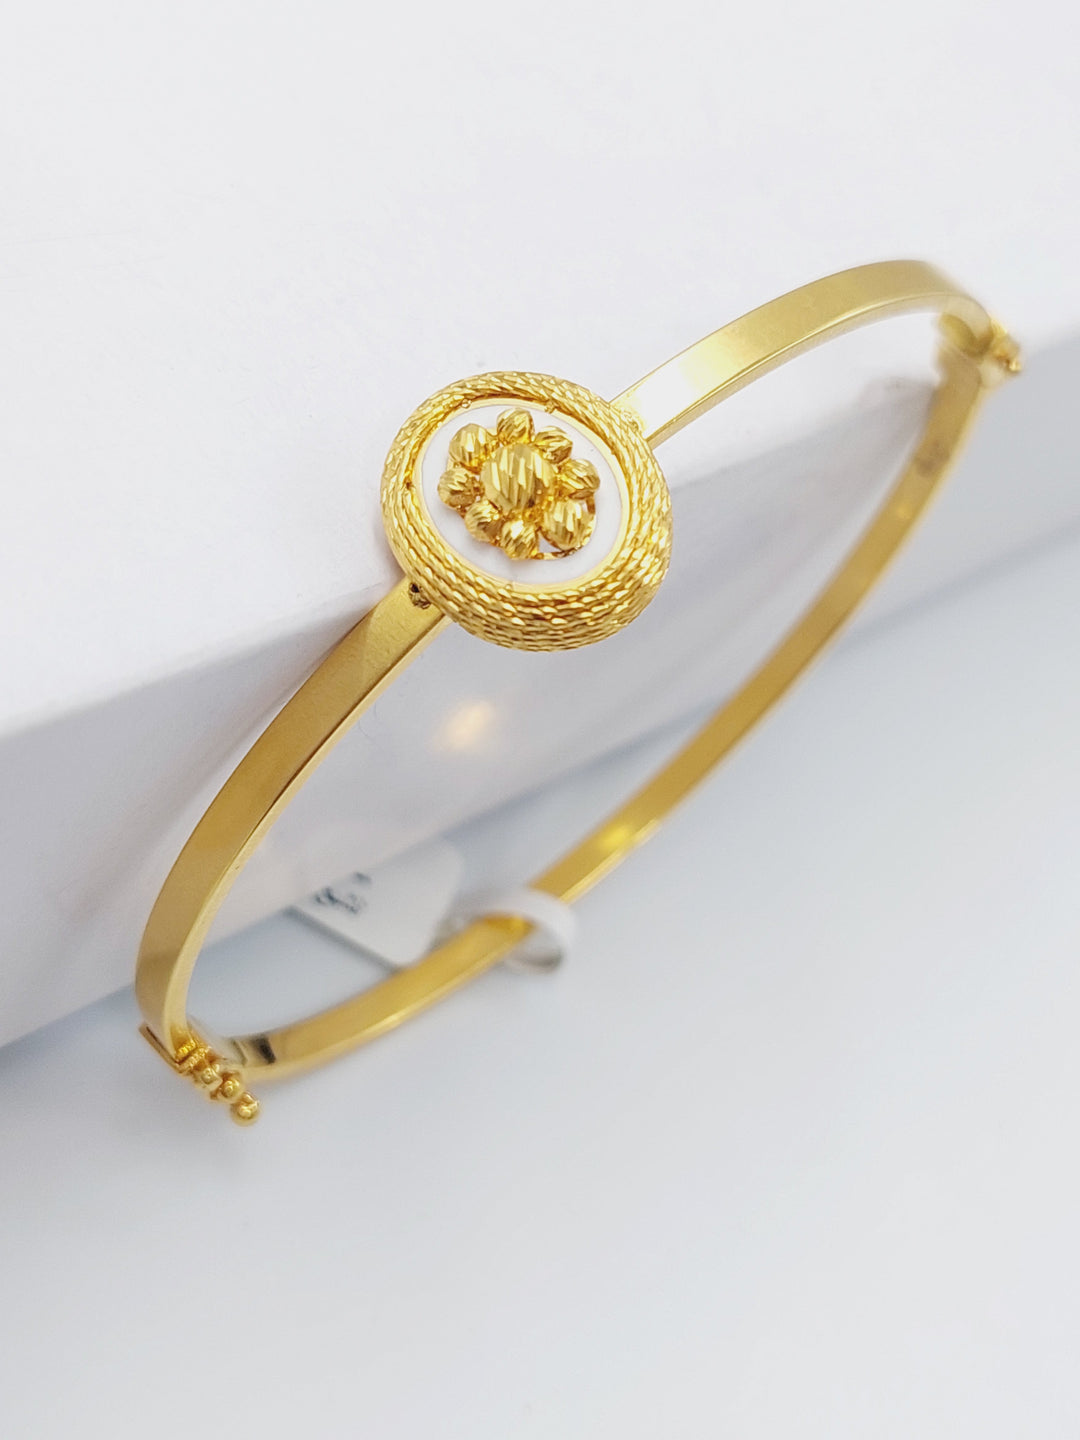 21K Gold Figaro Fancy Bangle Bracelet by Saeed Jewelry - Image 1